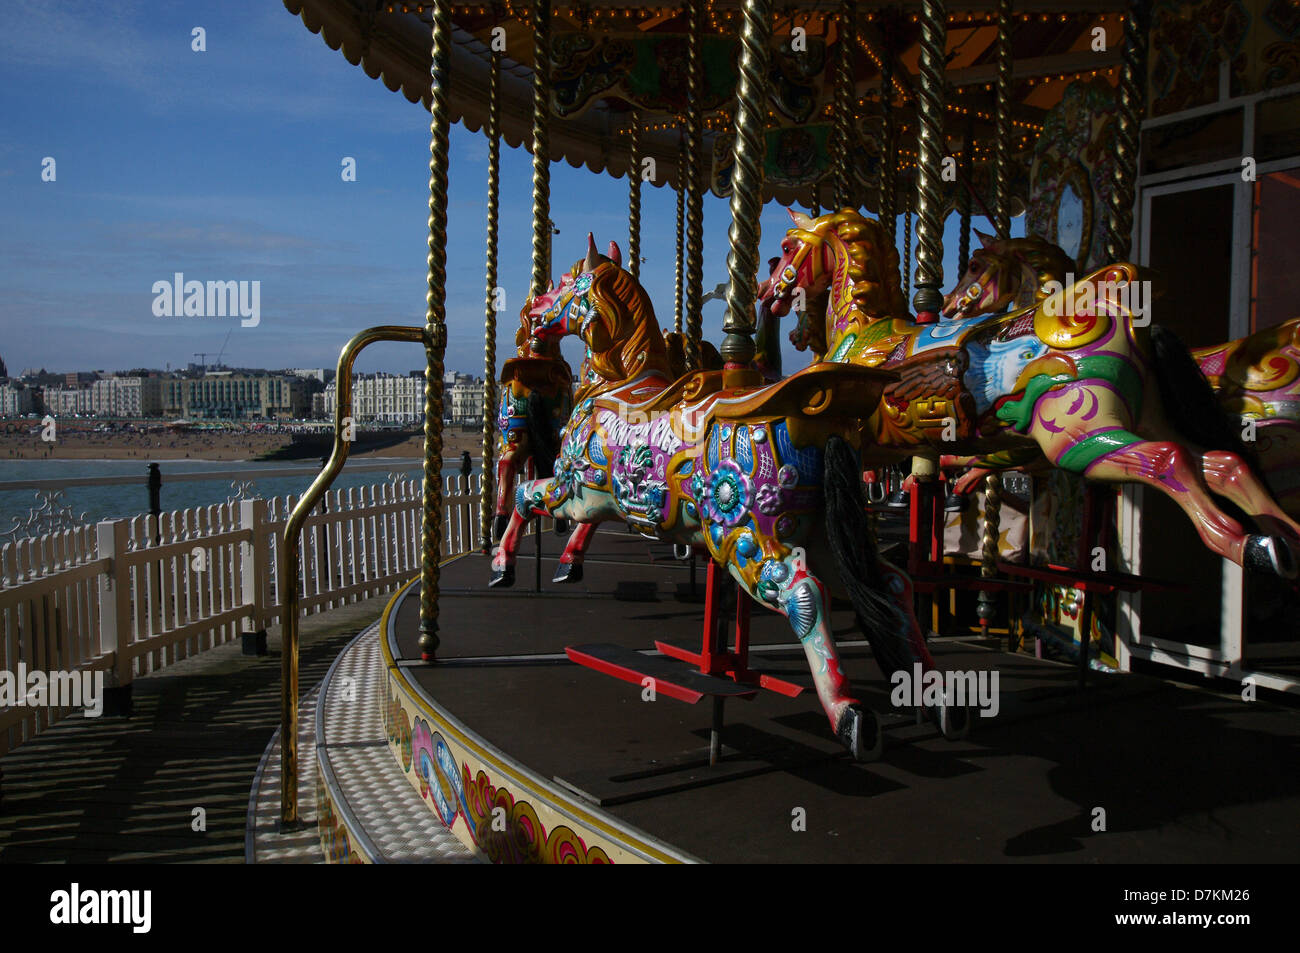 Carousel at the Brighton Pier - Brighton, England Stock Photo